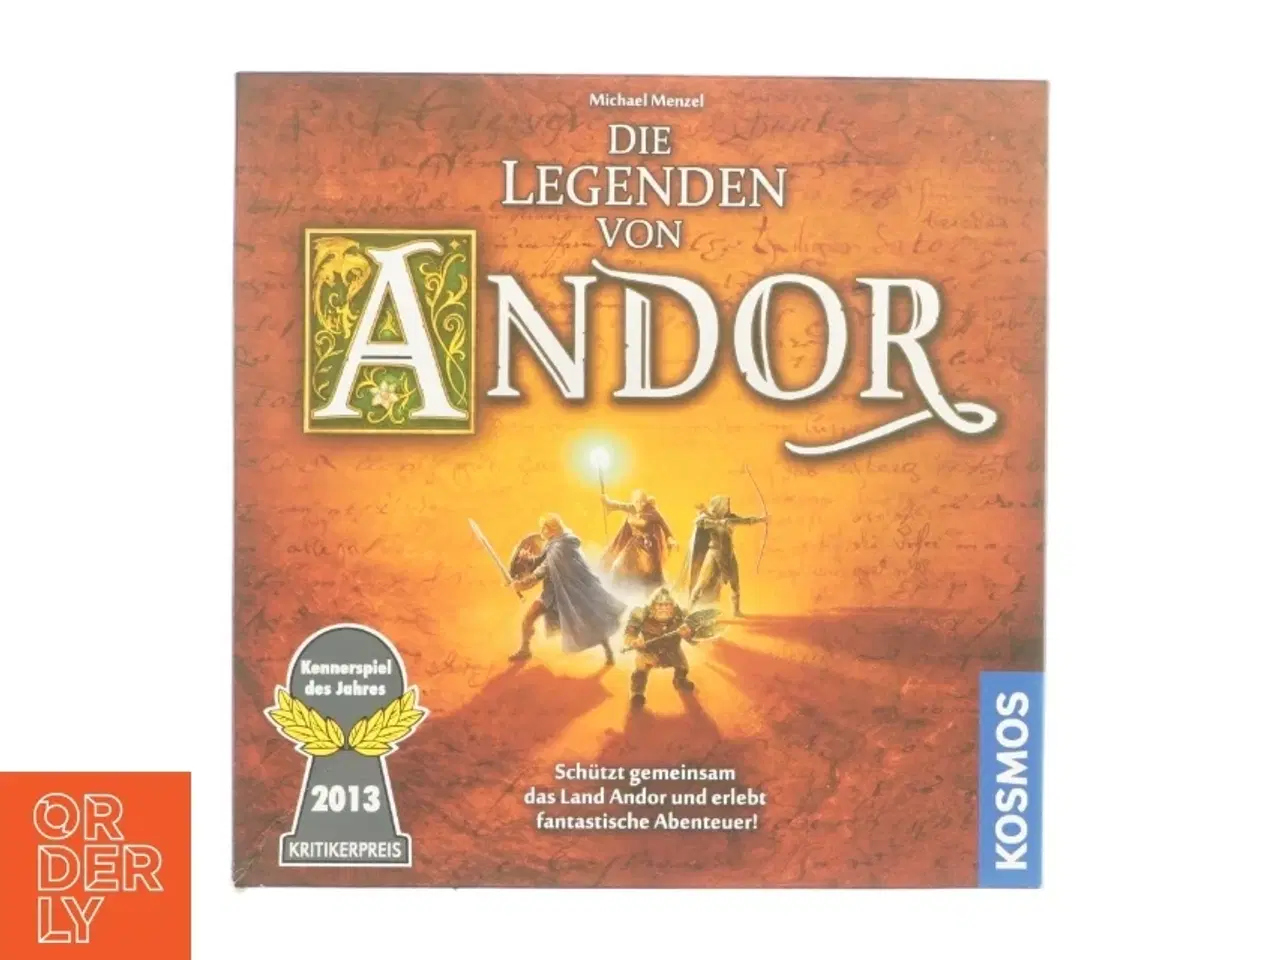 Billede 1 - Die legenden von Andor (Spil)